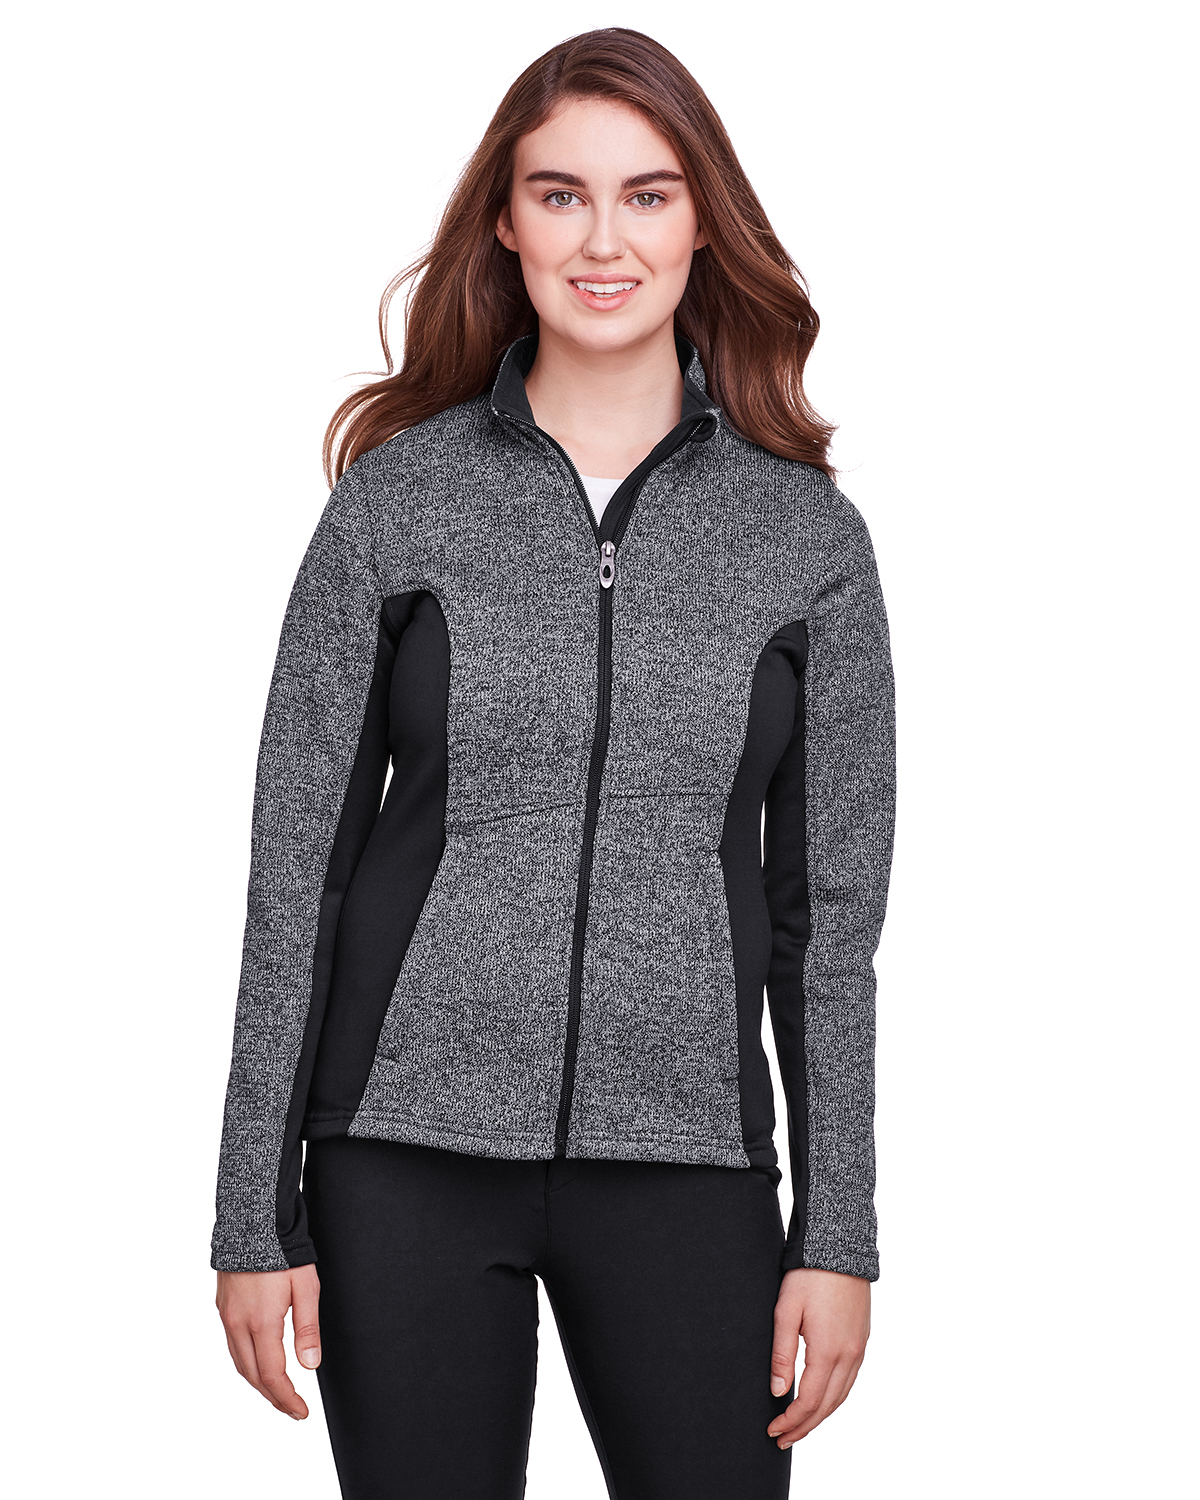 Spyder Ladies' Constant Full-Zip Sweater Fleece Jacket - 187335 ...